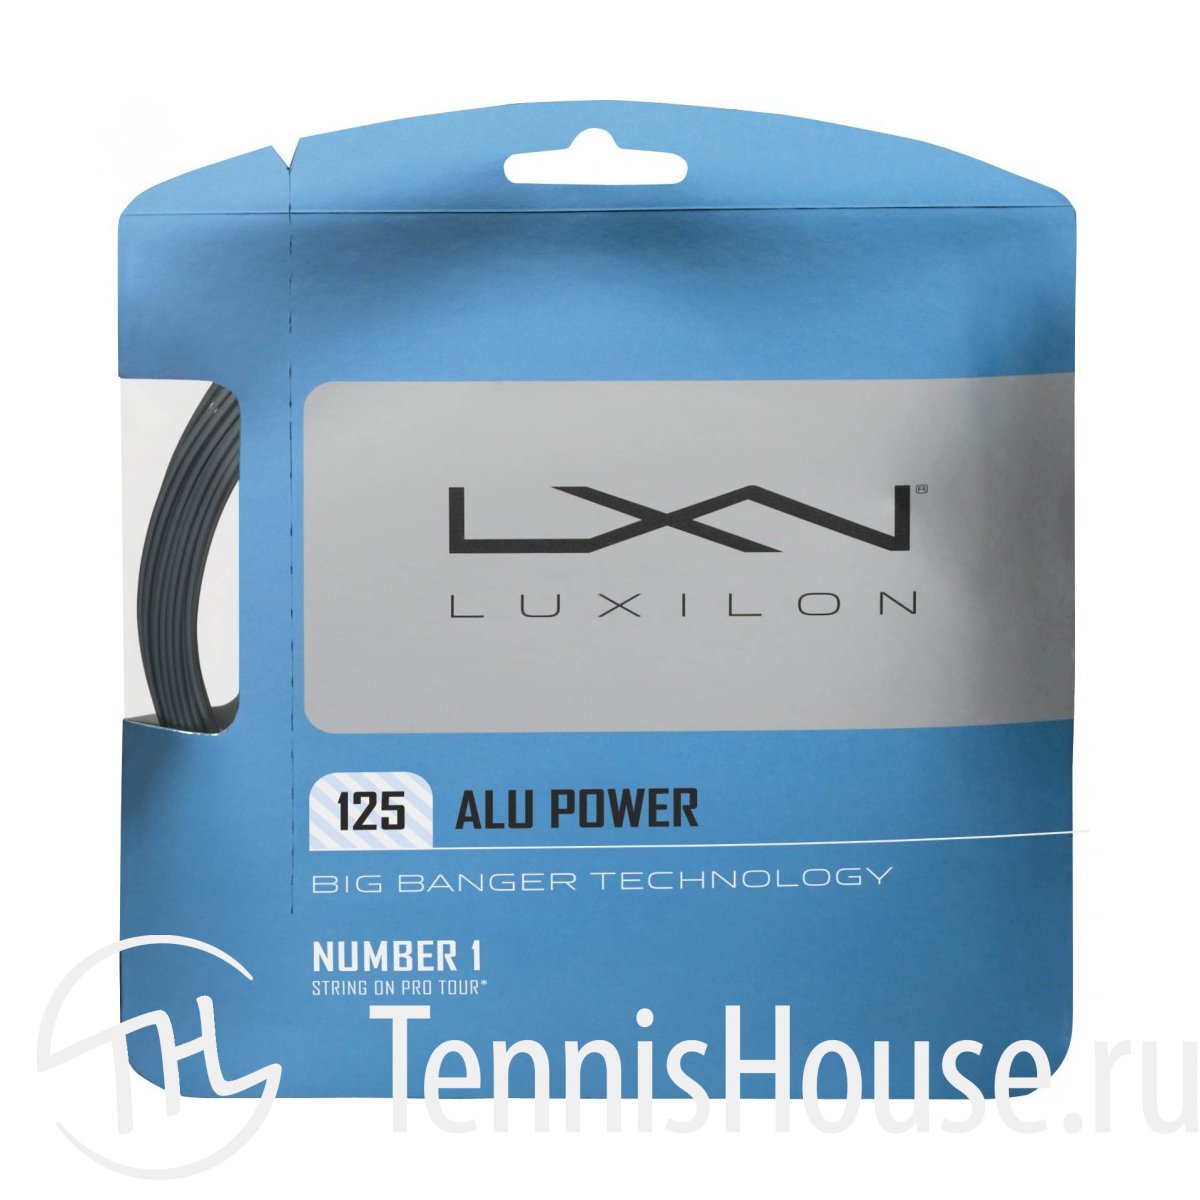 Luxilon Alu Power 1,25 WRZ995100